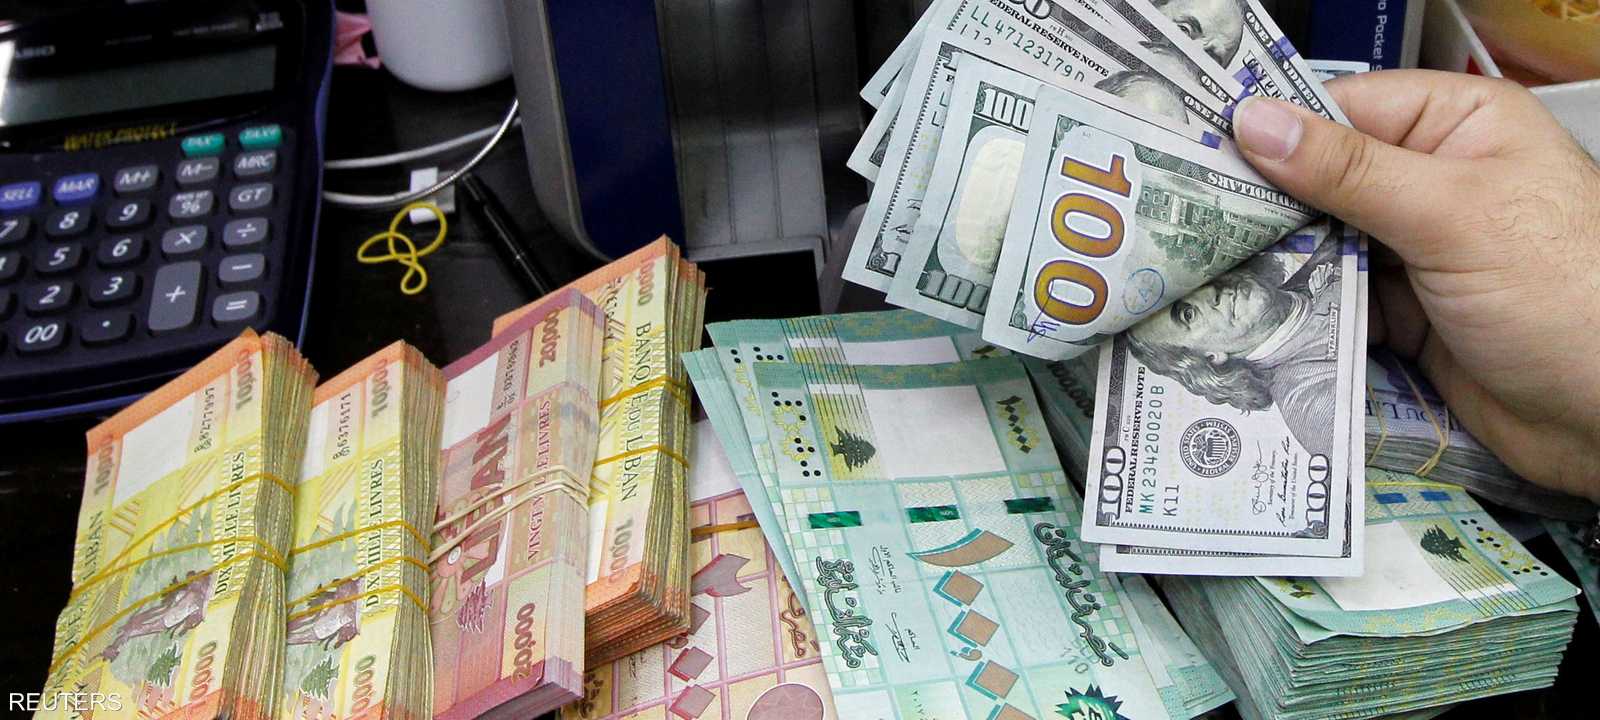 الدولار الواحد بات يساوي 6 آلاف ليرة لبنانية